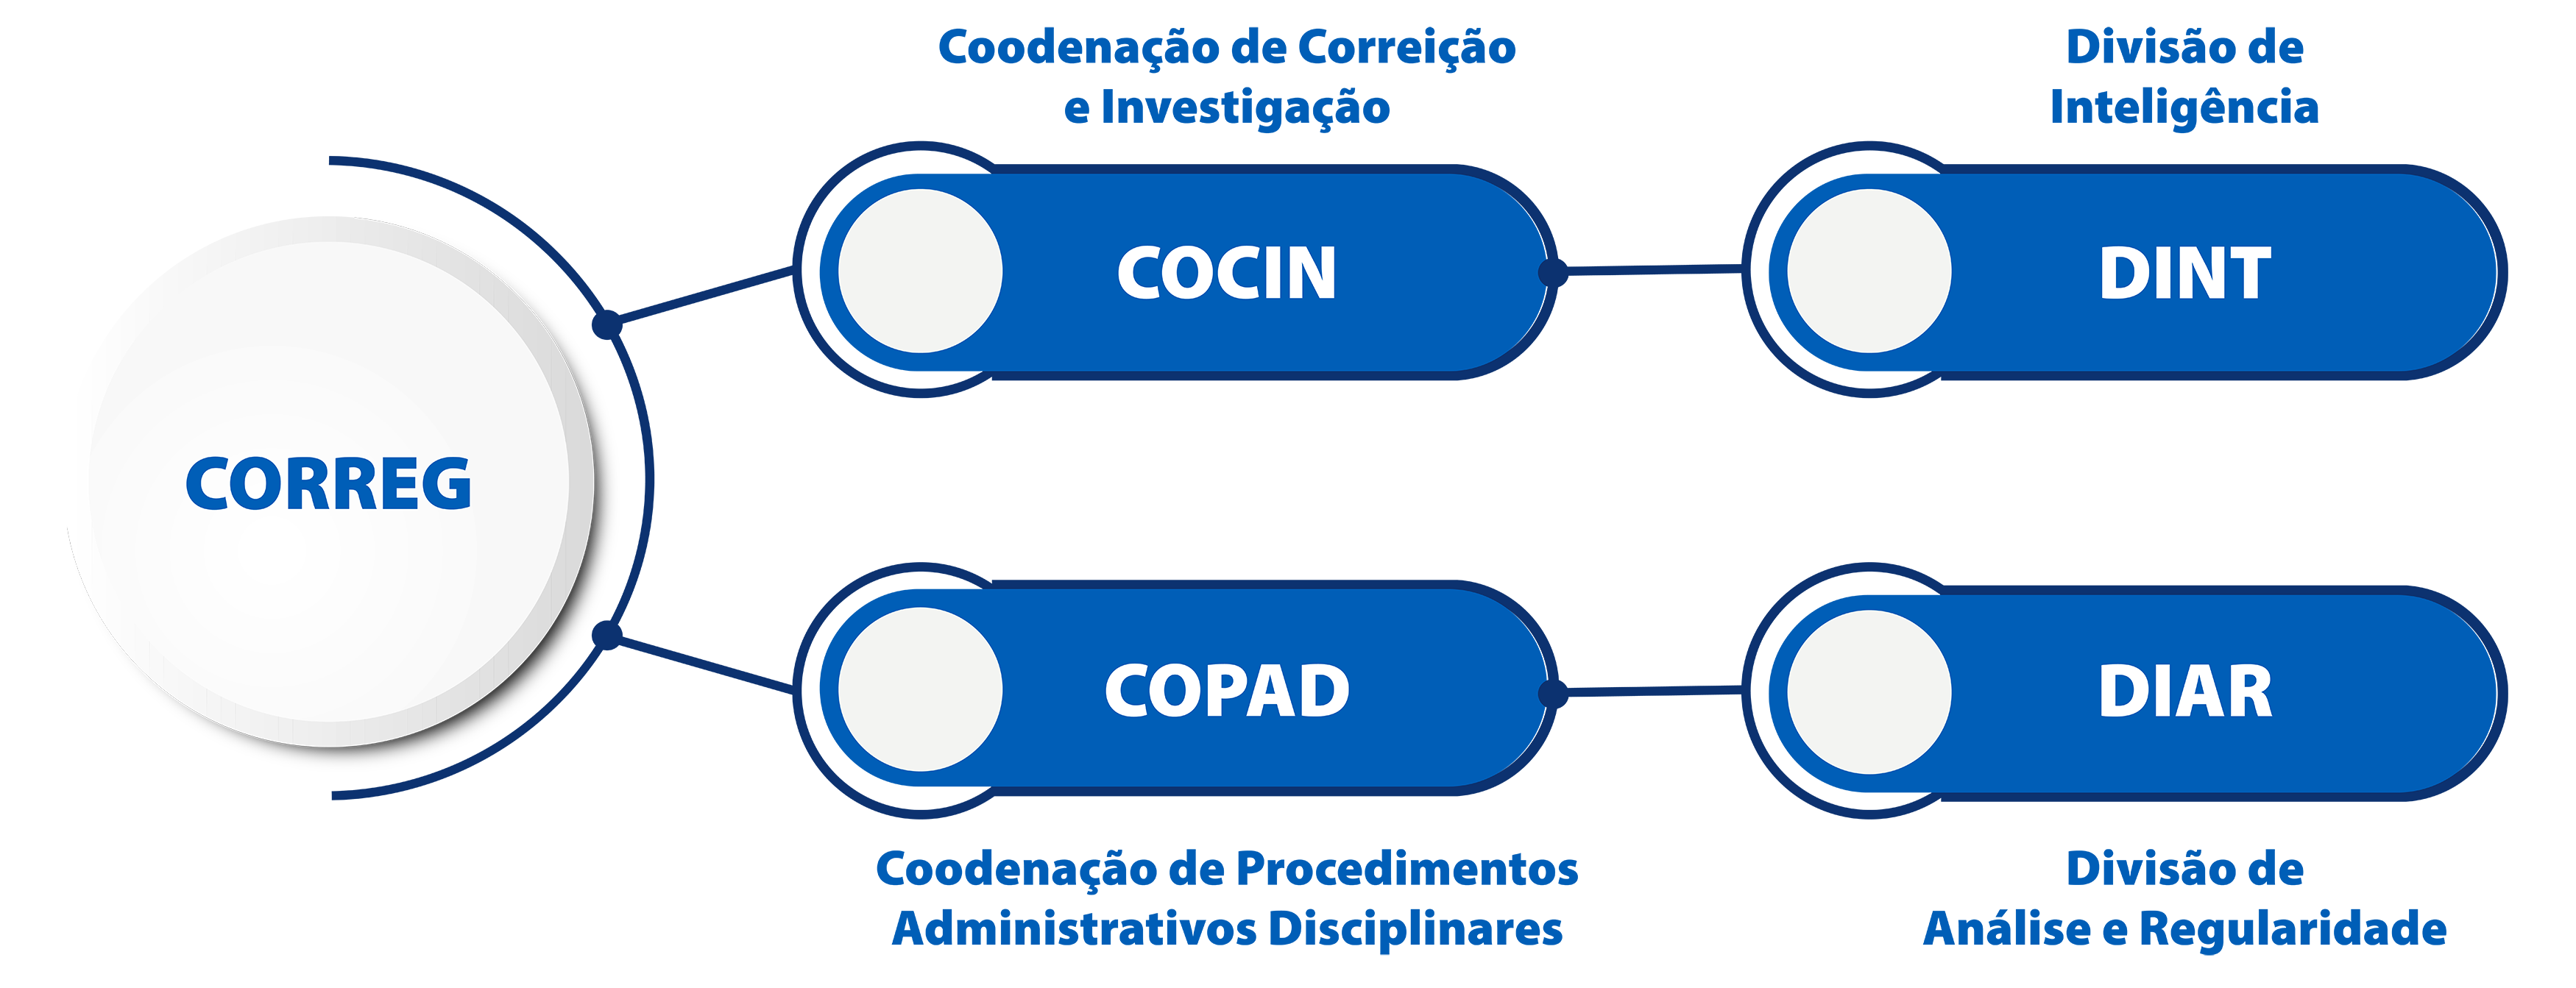 Imagem contendo a composição da Corregedoria. CORREG > COCIN > DINT/ CORREG > COPAD > DIAR